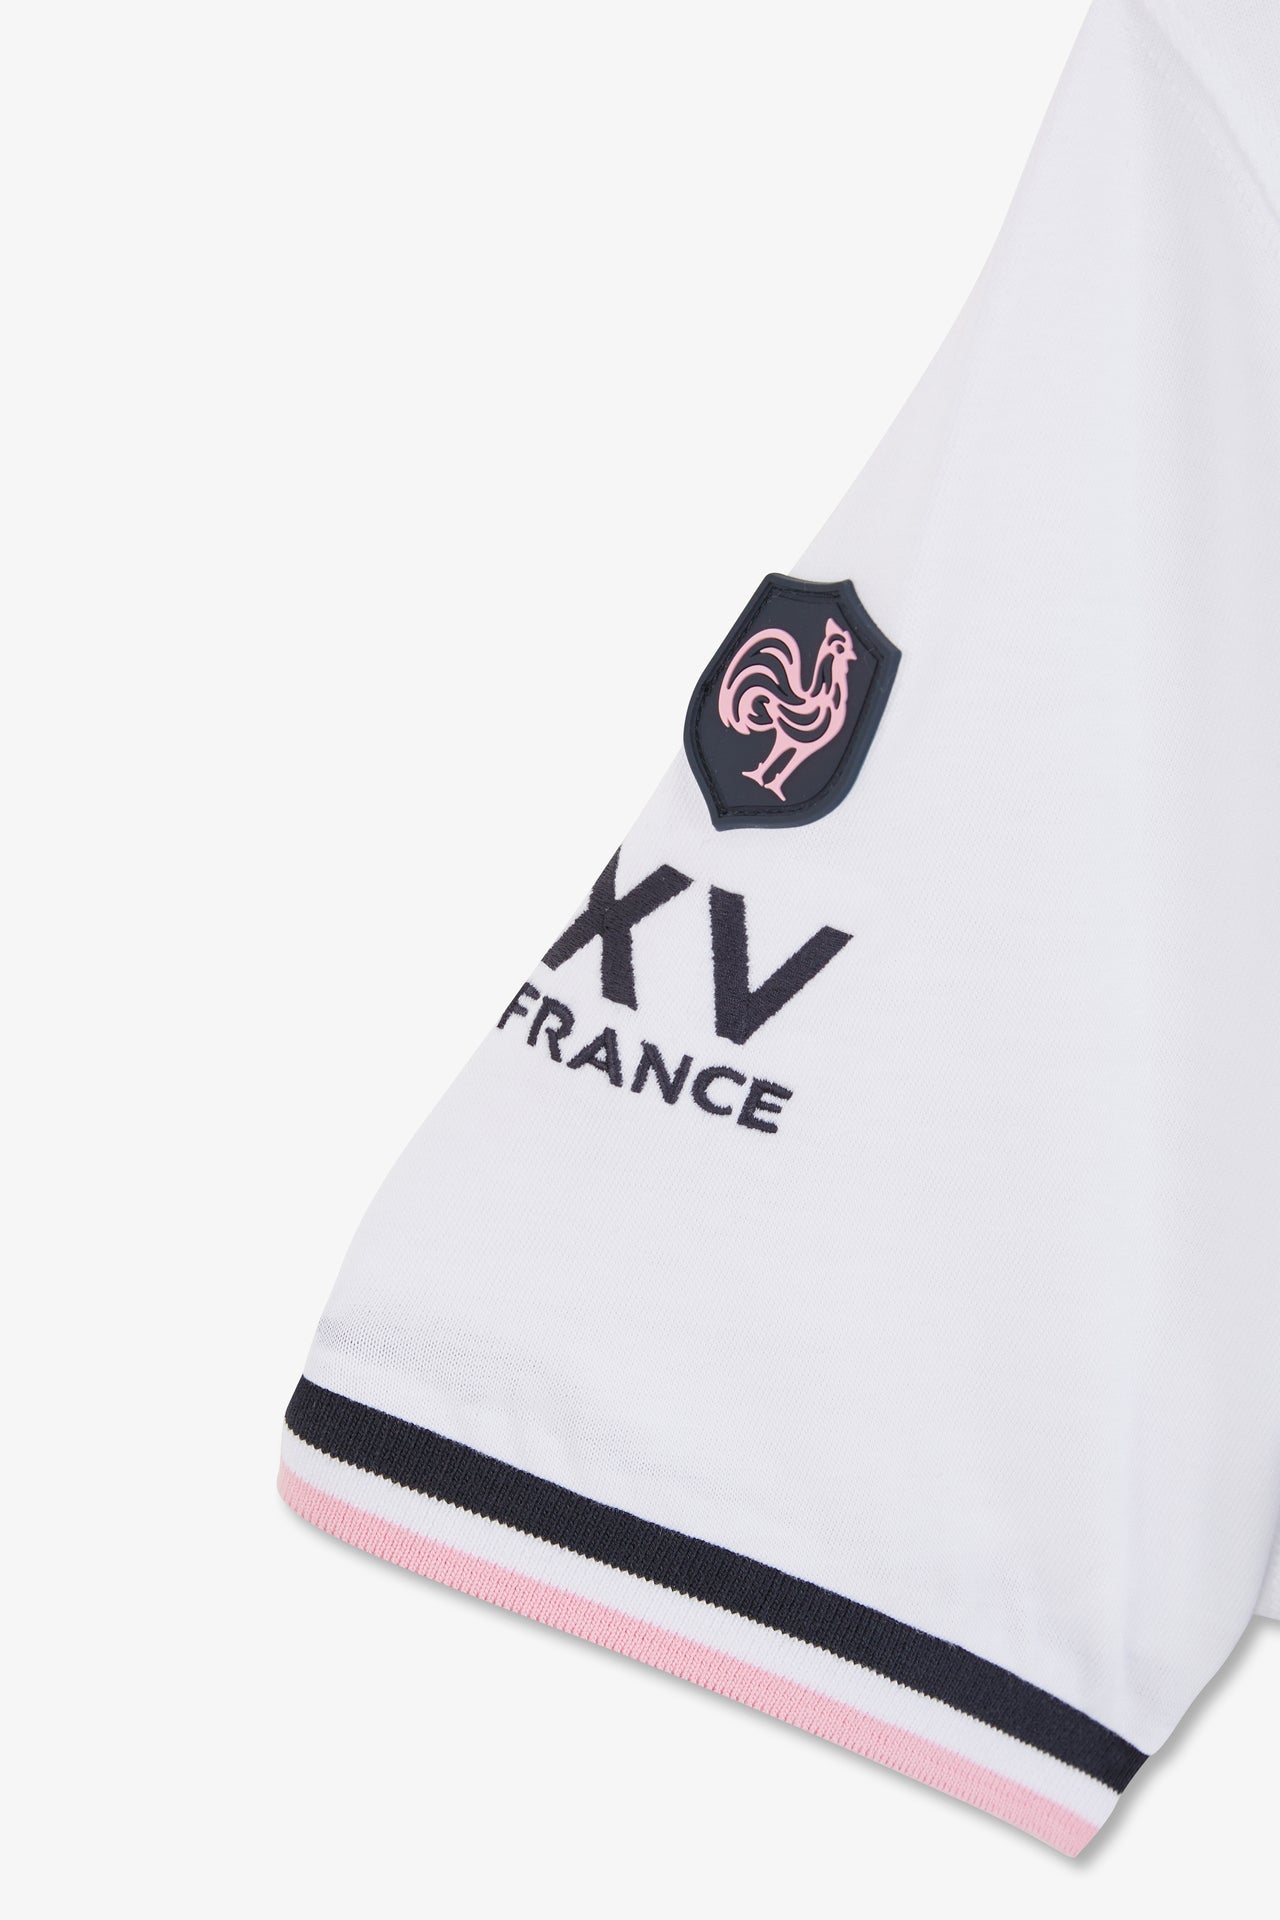 T-shirt blanc à broderie XV de France au dos - Image 9